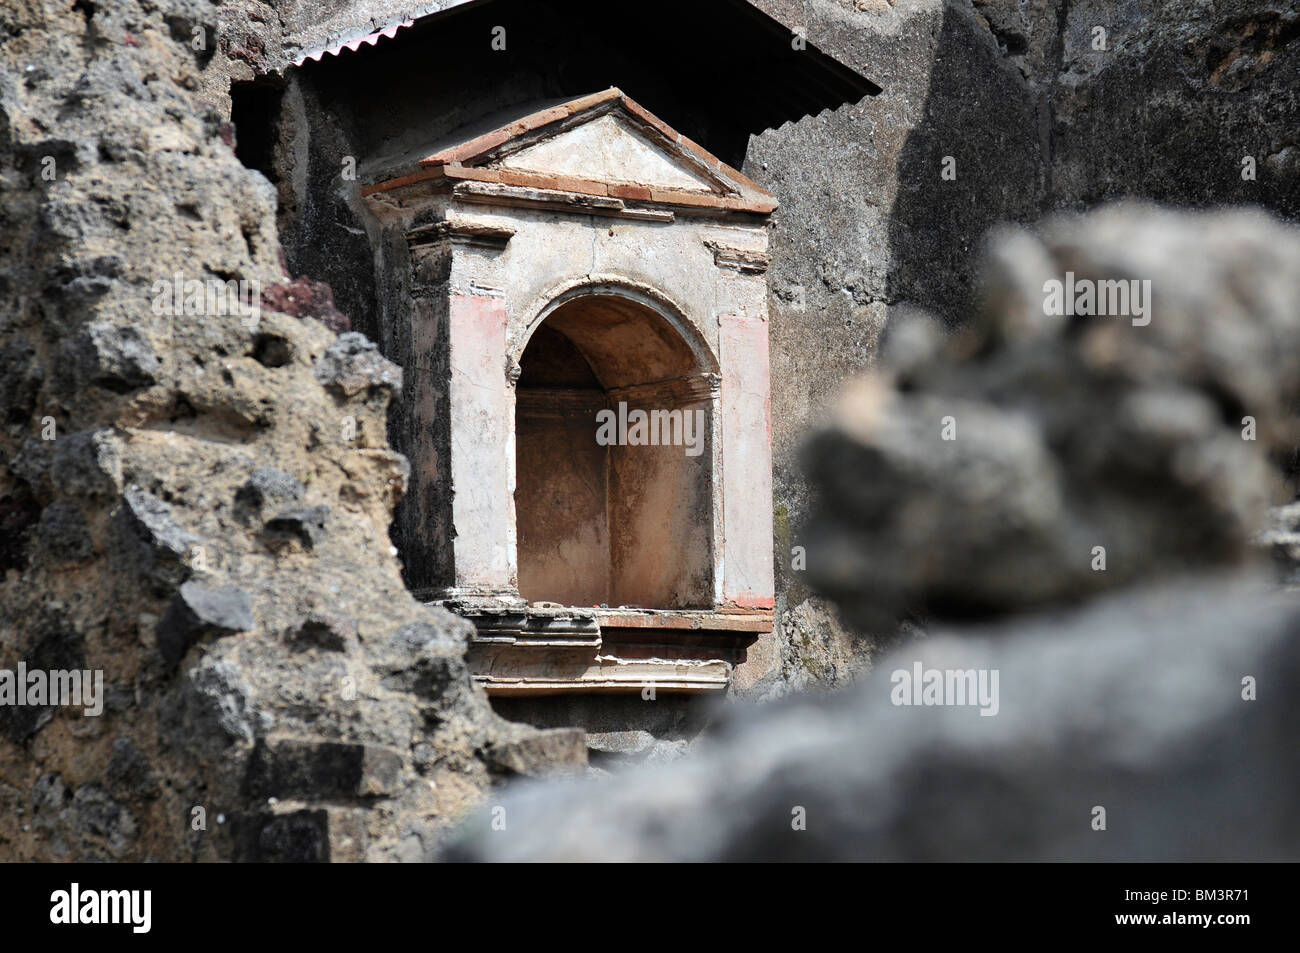 Haushalt Schrein bekannt als ein Lalarium an Pompeji-Italien  Stockfotografie - Alamy